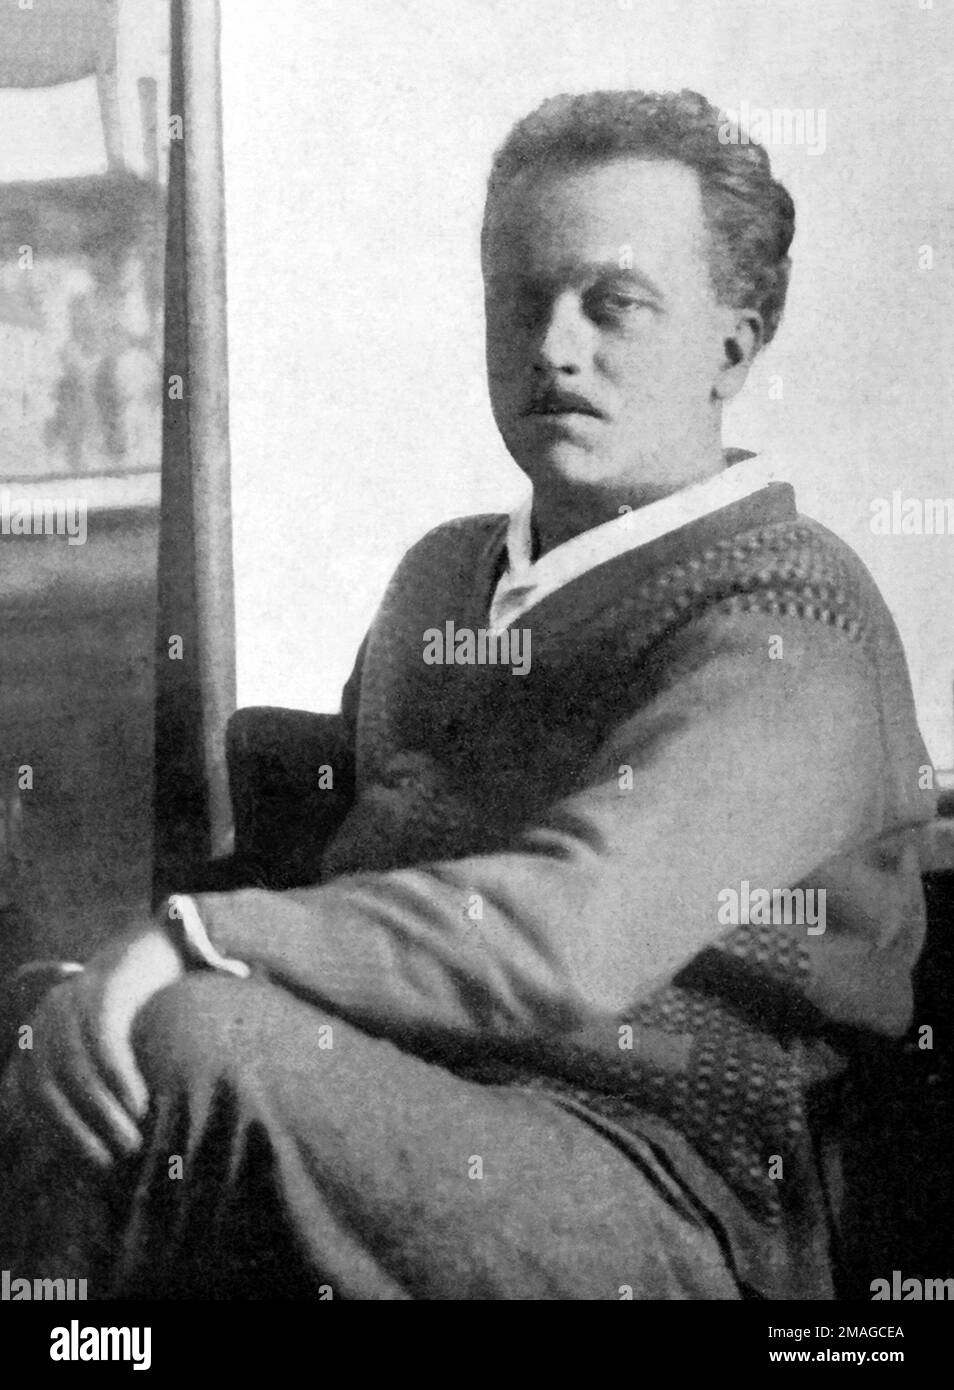 Raoul Dufy. Portrait du peintre fauciste français Raoul Dufy (1877-1953), 1926 Banque D'Images